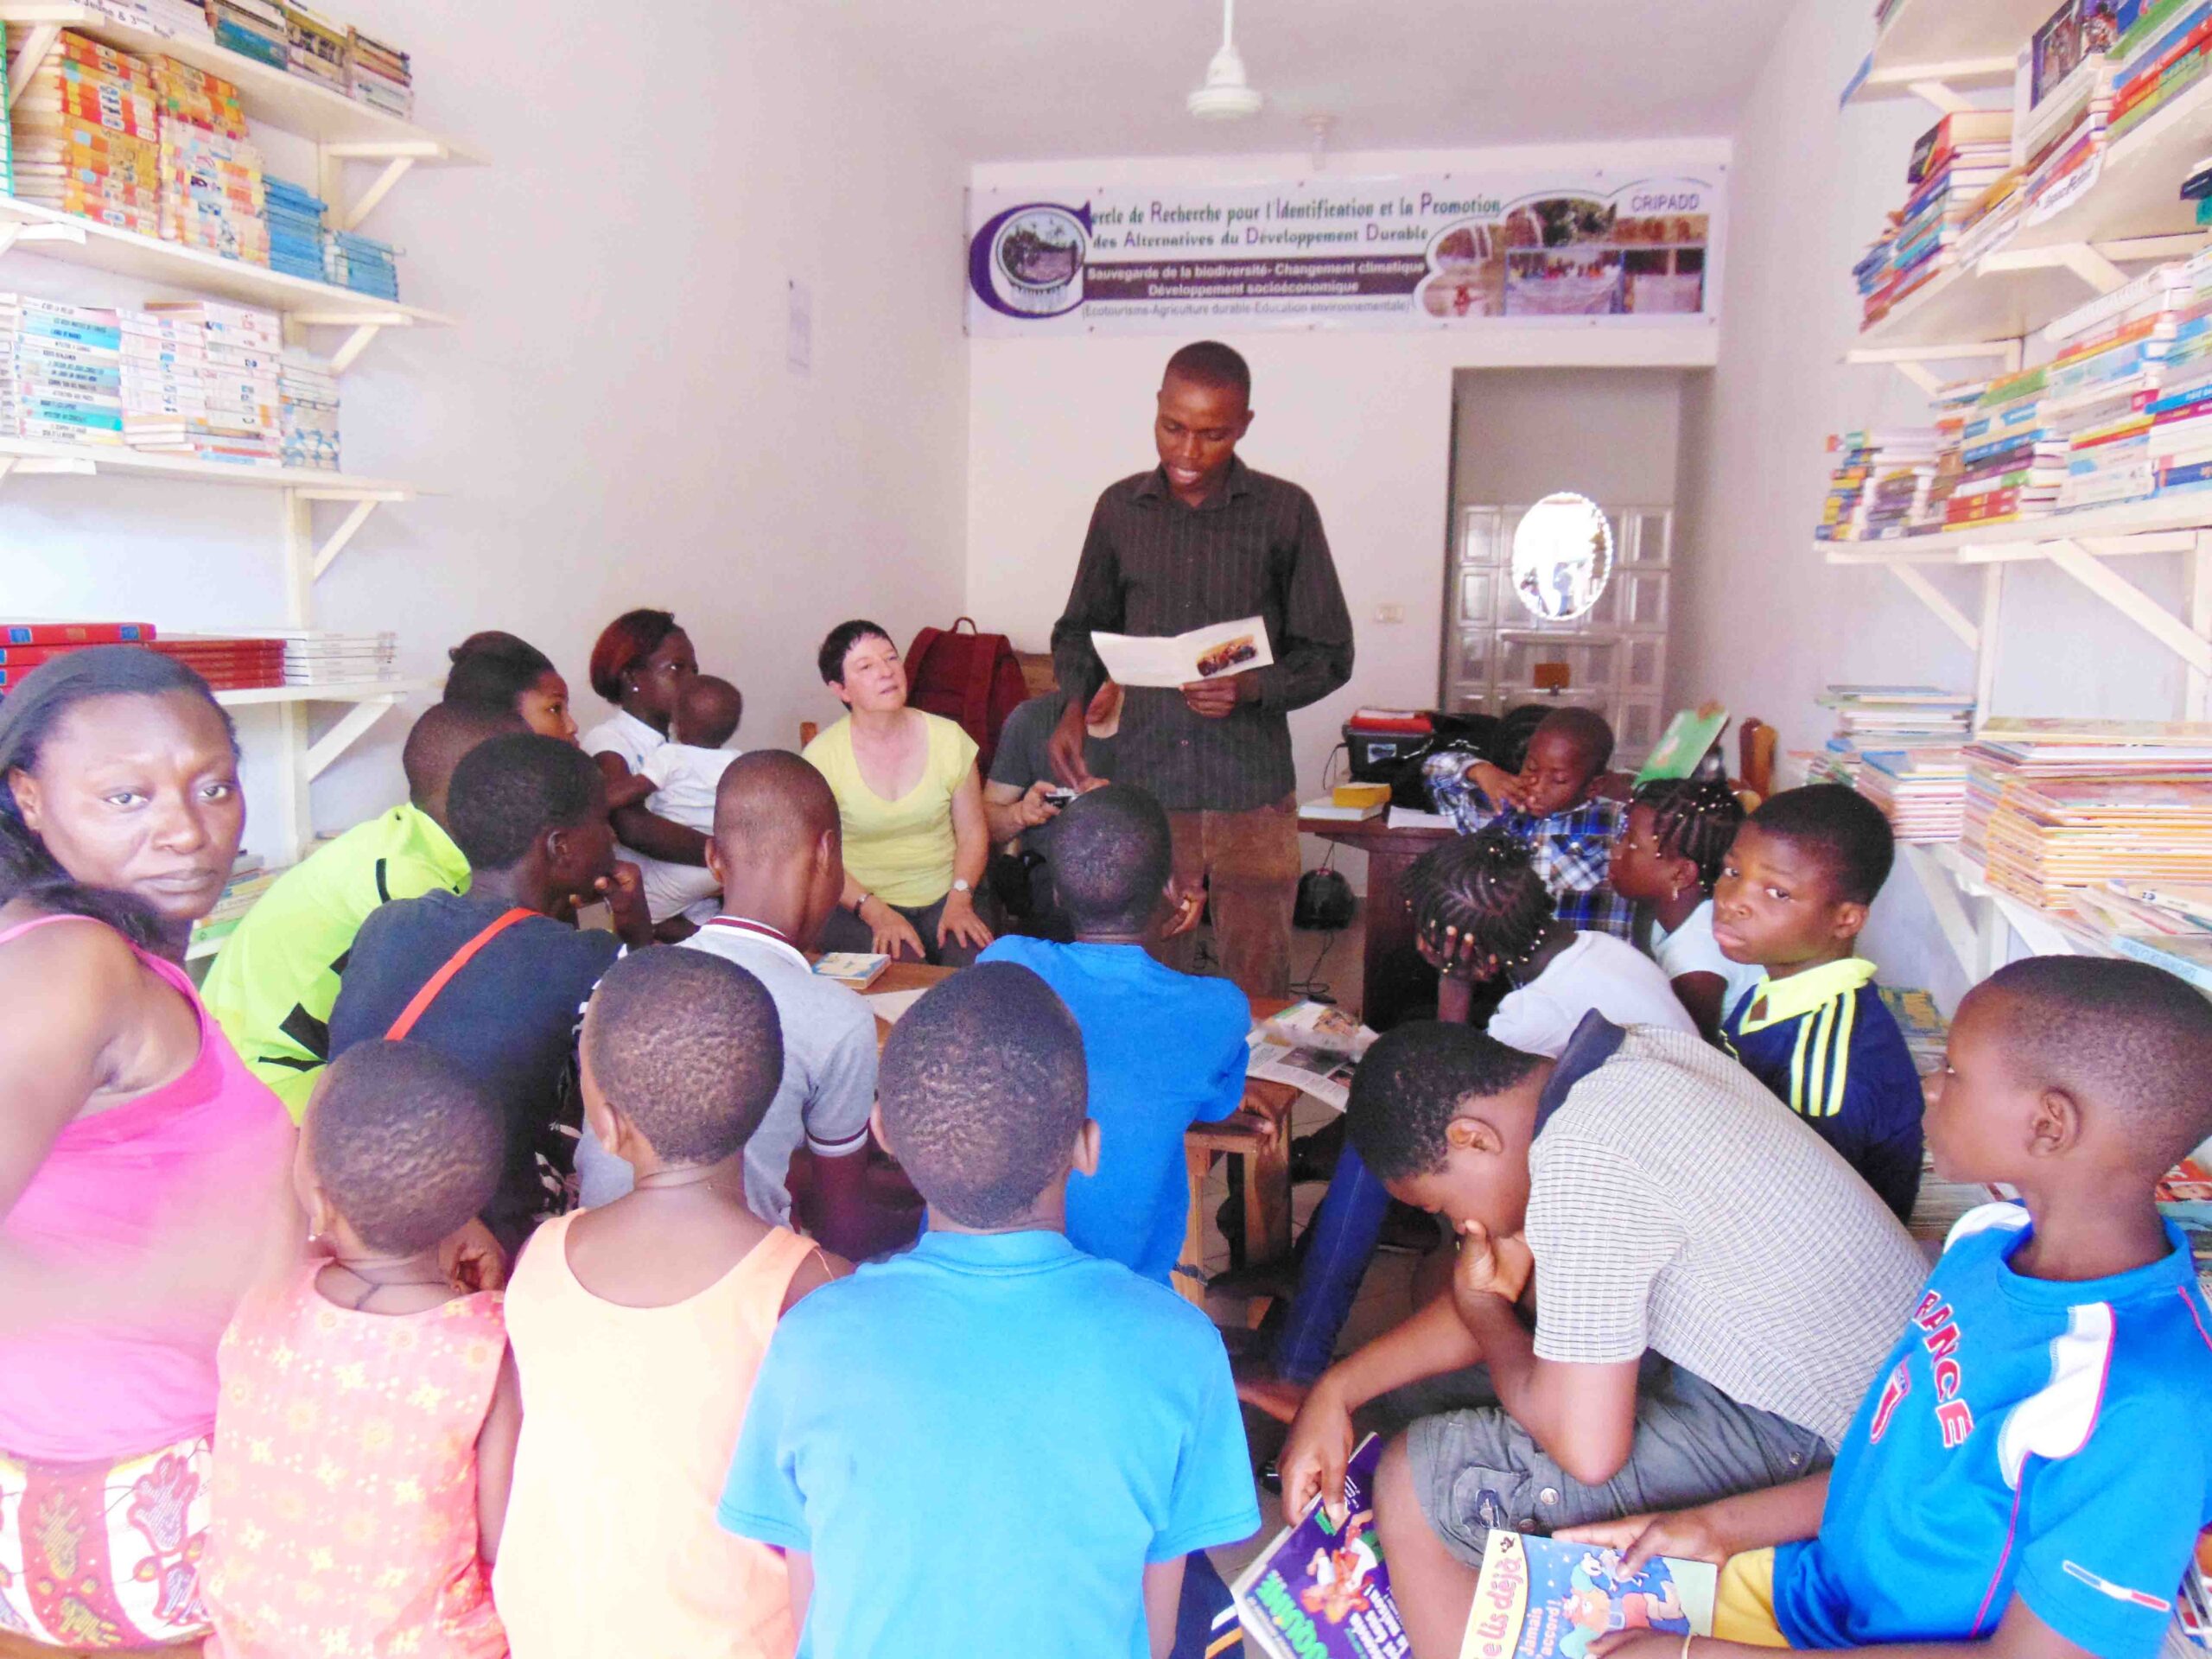 ONG CRIPADD, Faciliter l’accès aux livres, leviers d’accès à la culture et à l’éducation